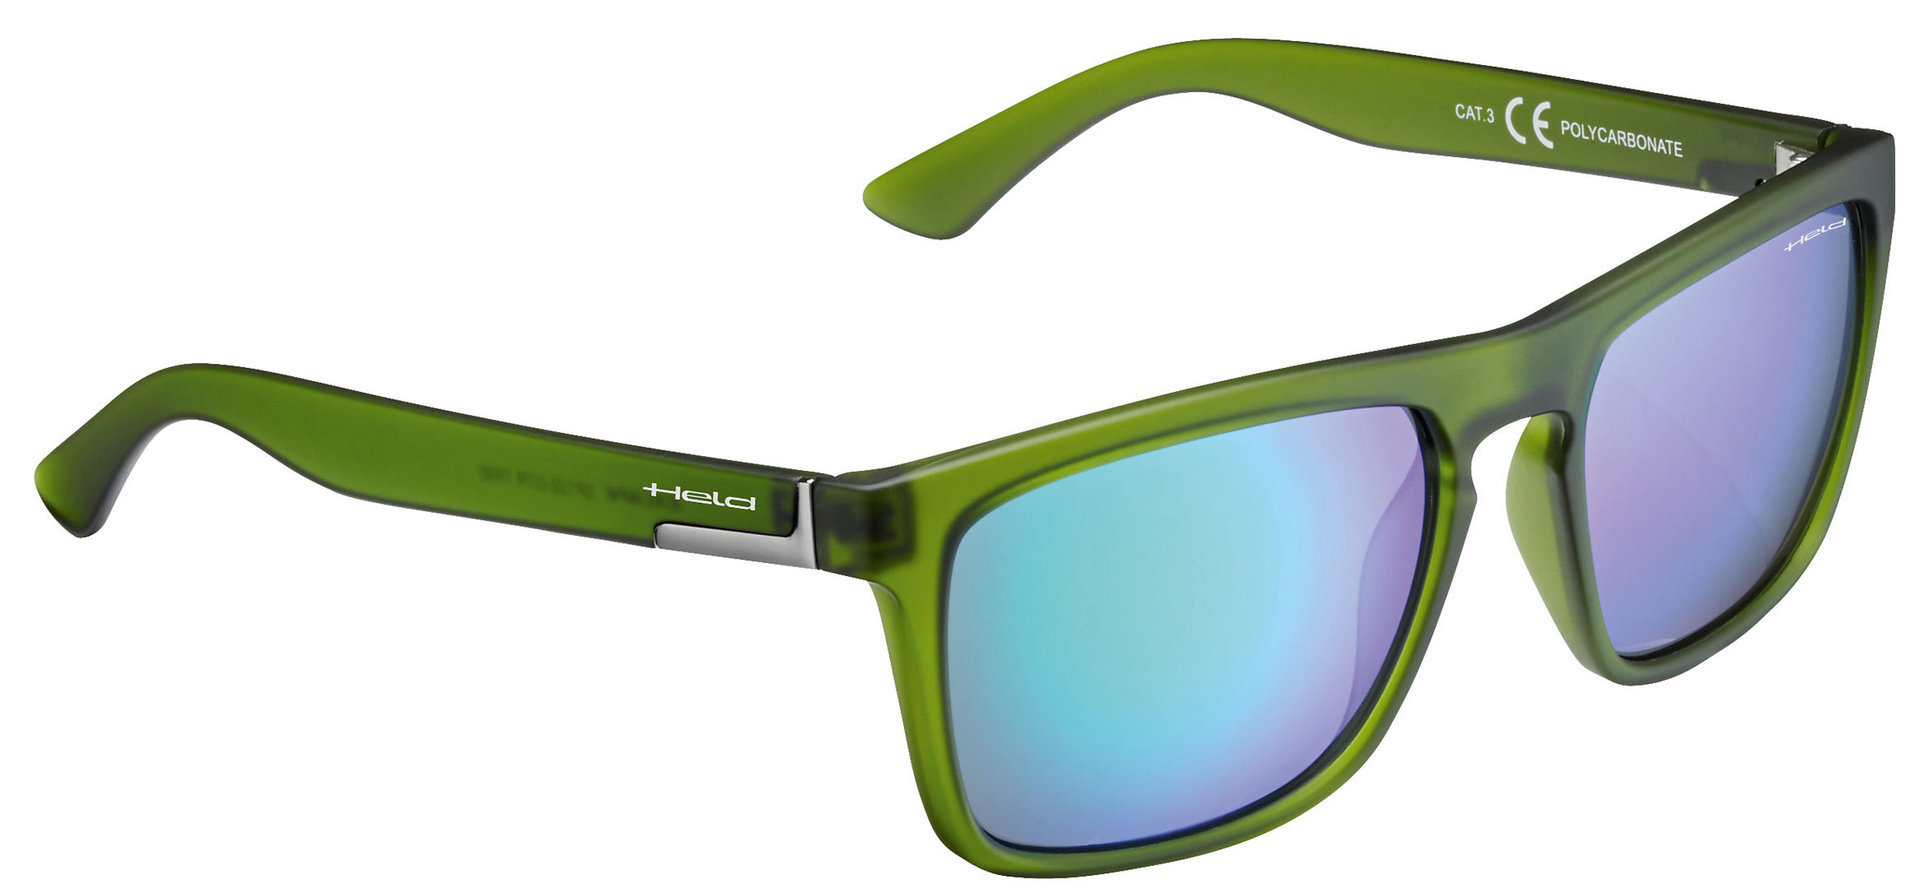 солнцезащитные очки 71 зеленый Очки Held 9541 солнцезащитные, зеленый